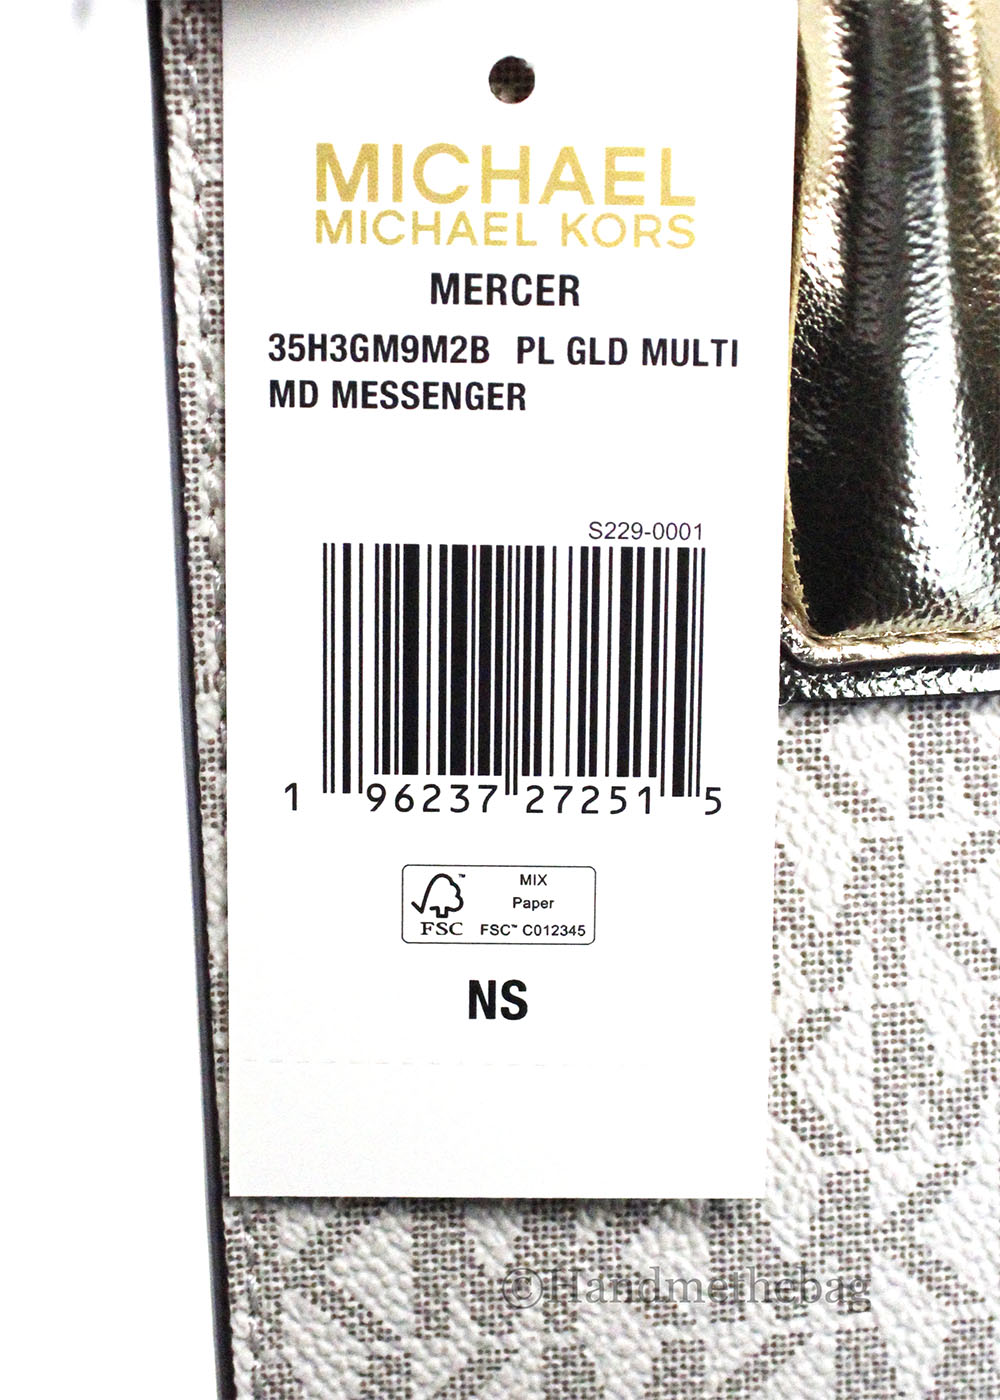 Michael Kors Mercer Medium Pale Gold Messenger Crossbody Bag